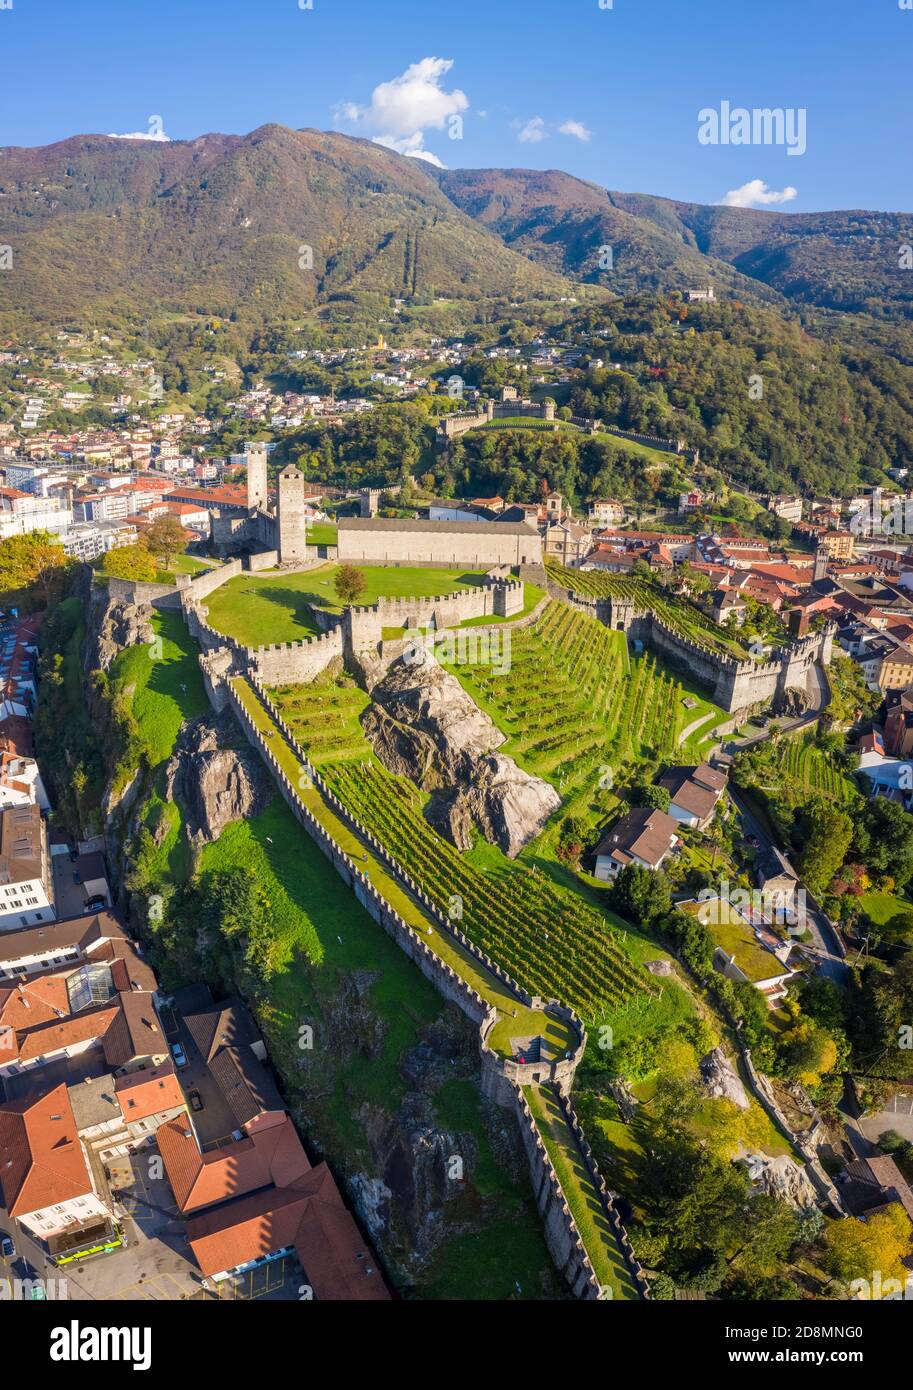 Vista aerea dei castelli medievali di Bellinzona, patrimonio dell'umanità dell'UNESCO, in autunno al tramonto. Cantone Ticino, Svizzera. Foto Stock